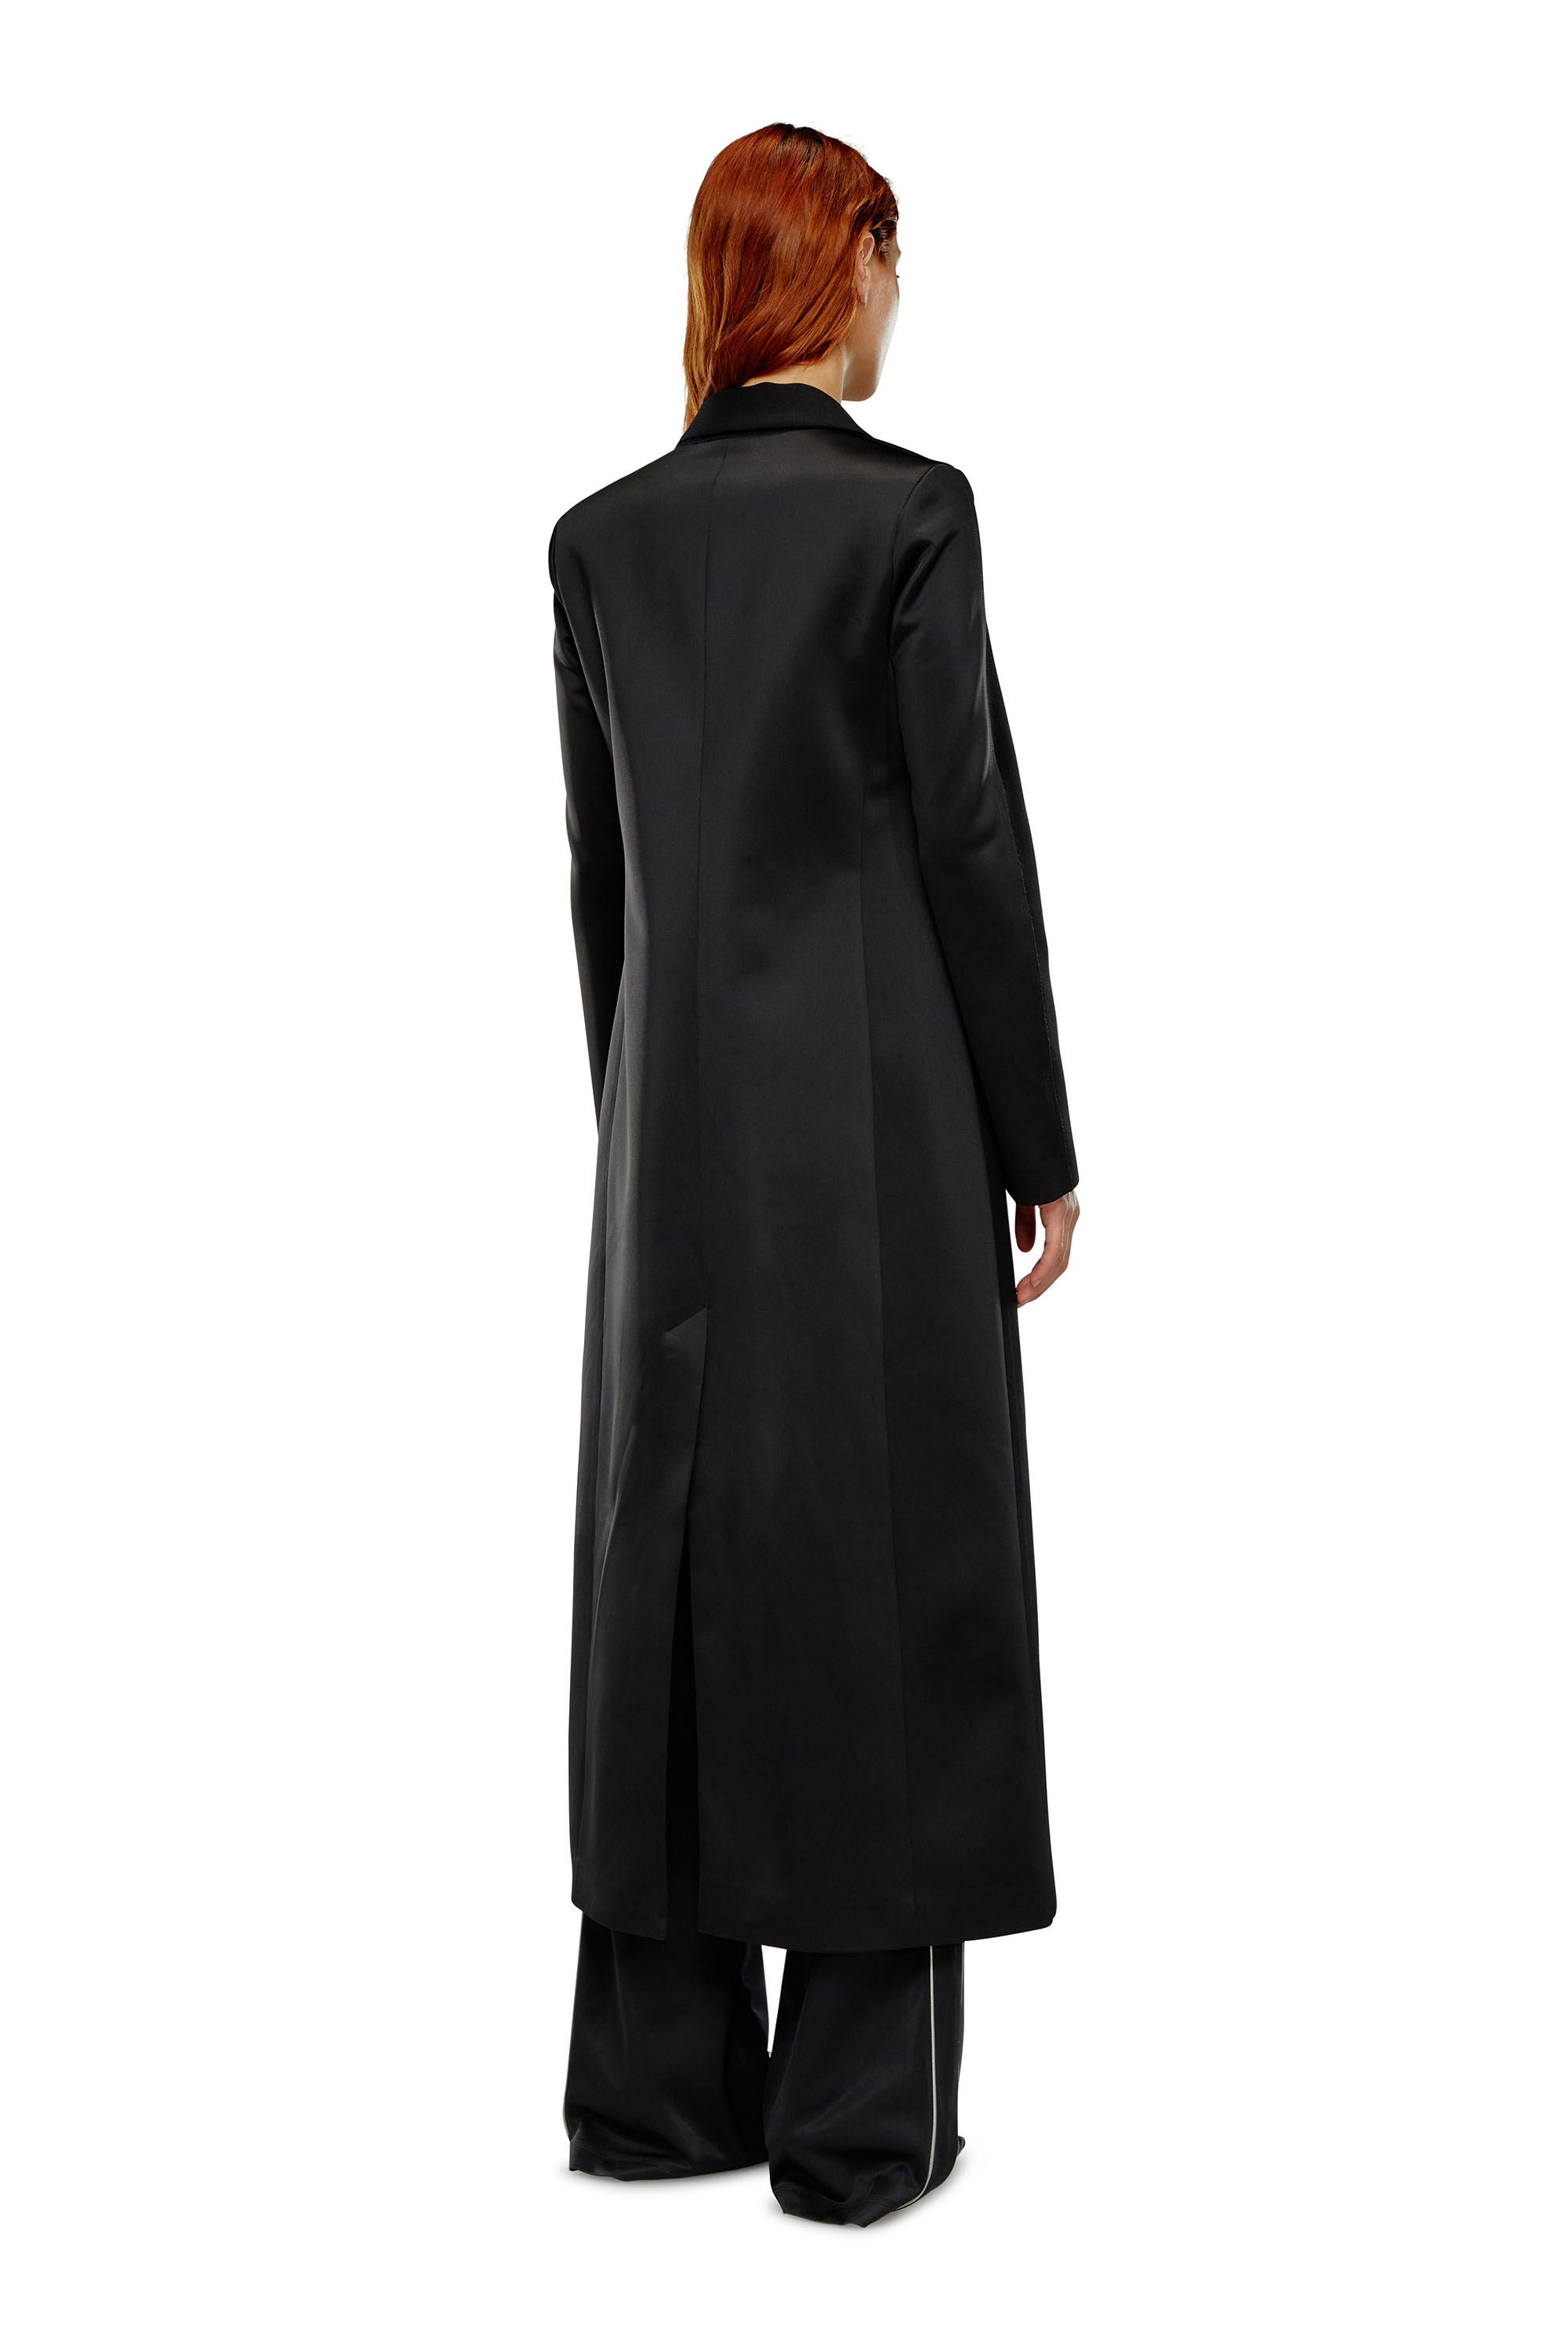 Diesel - Manteau long en laine fraîche et tissu technique - Vestes - Femme - Noir